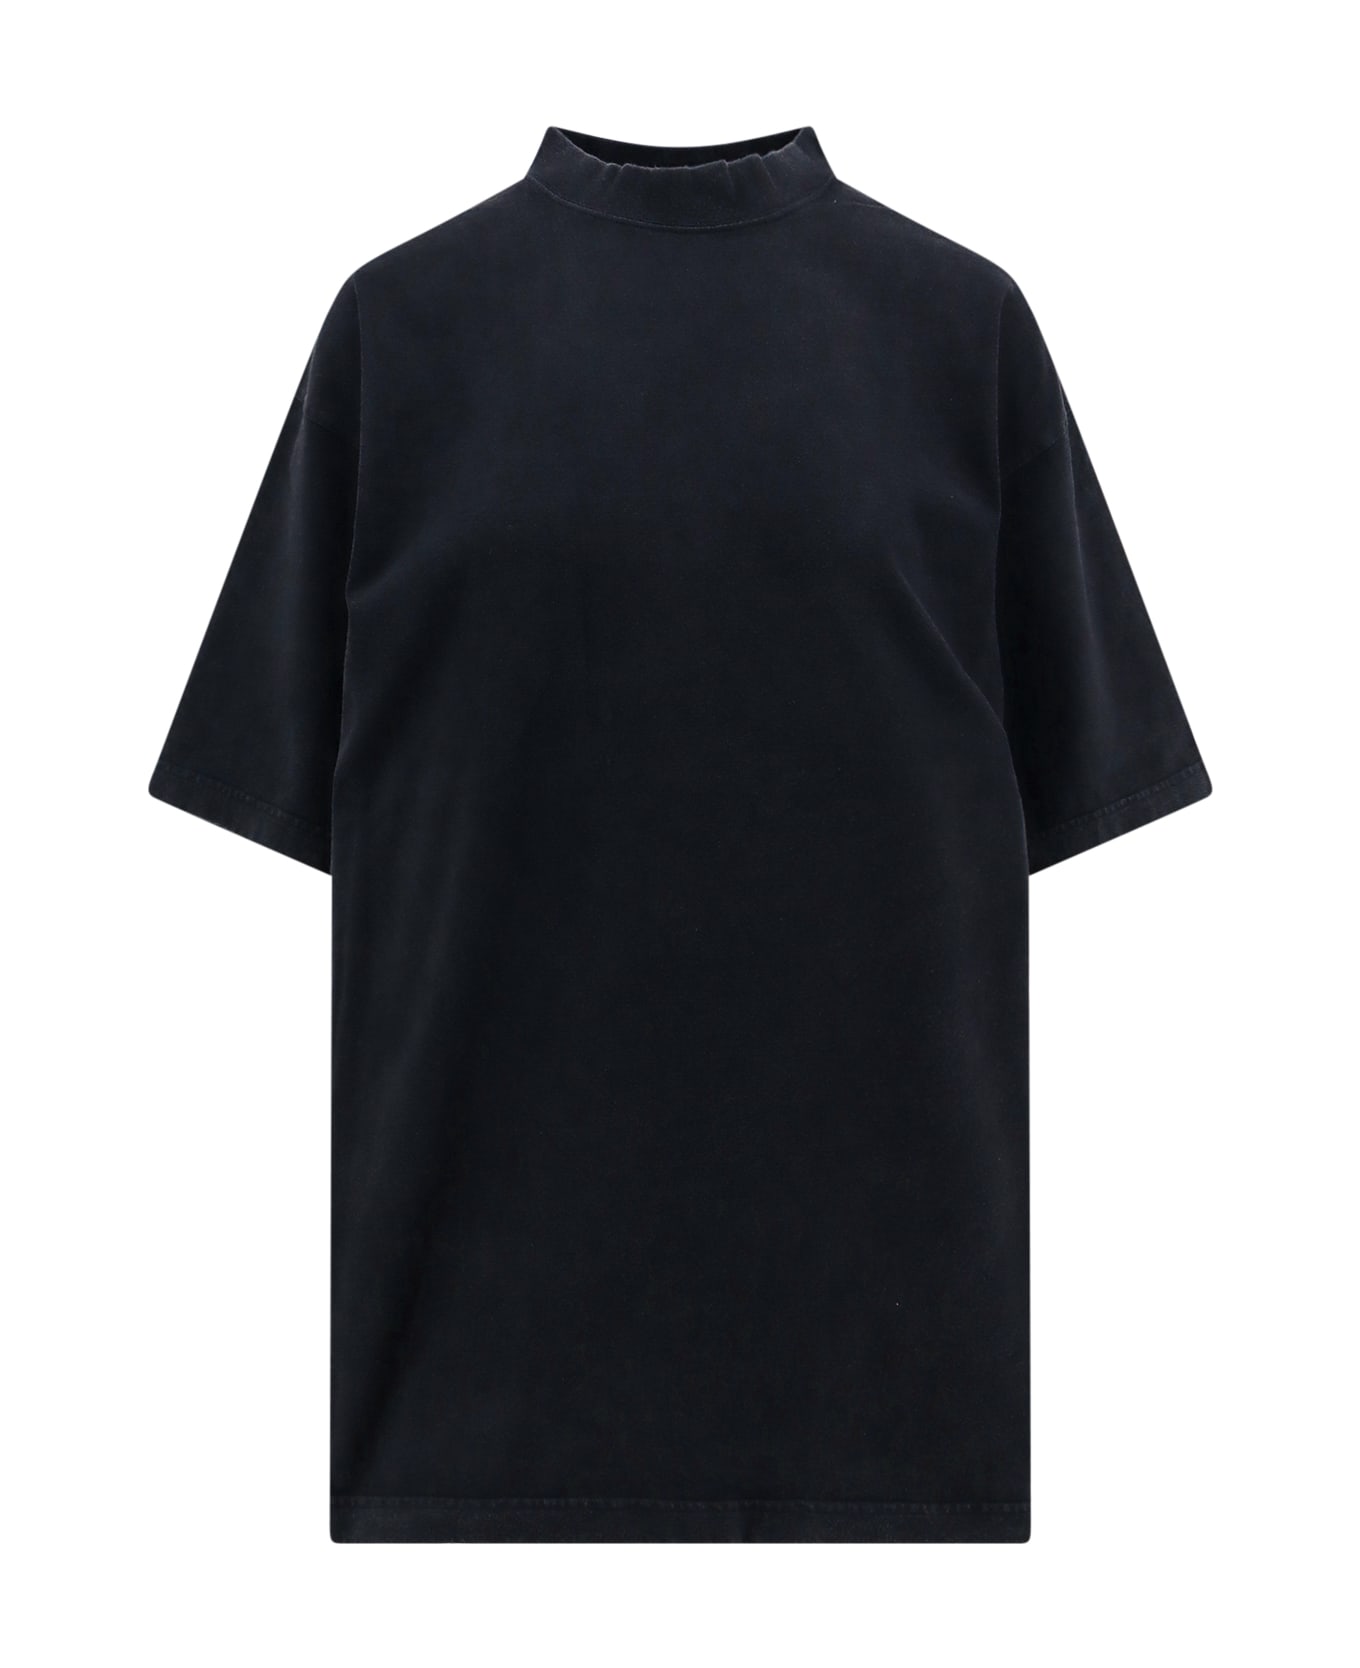 Balenciaga Hand-drawn T-shirt - Black